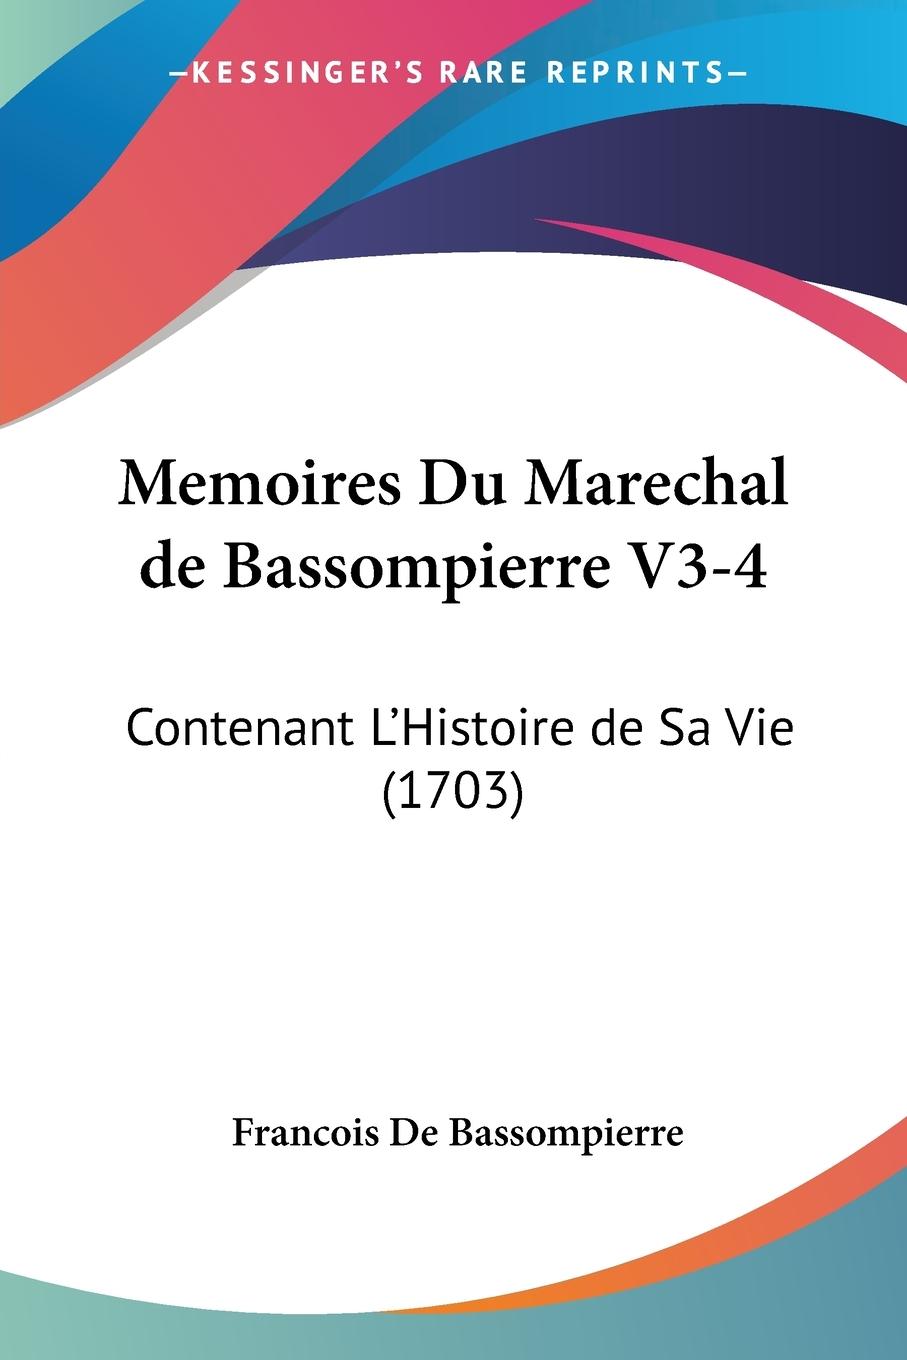 Memoires Du Marechal de Bassompierre V3-4 - De Bassompierre, Francois